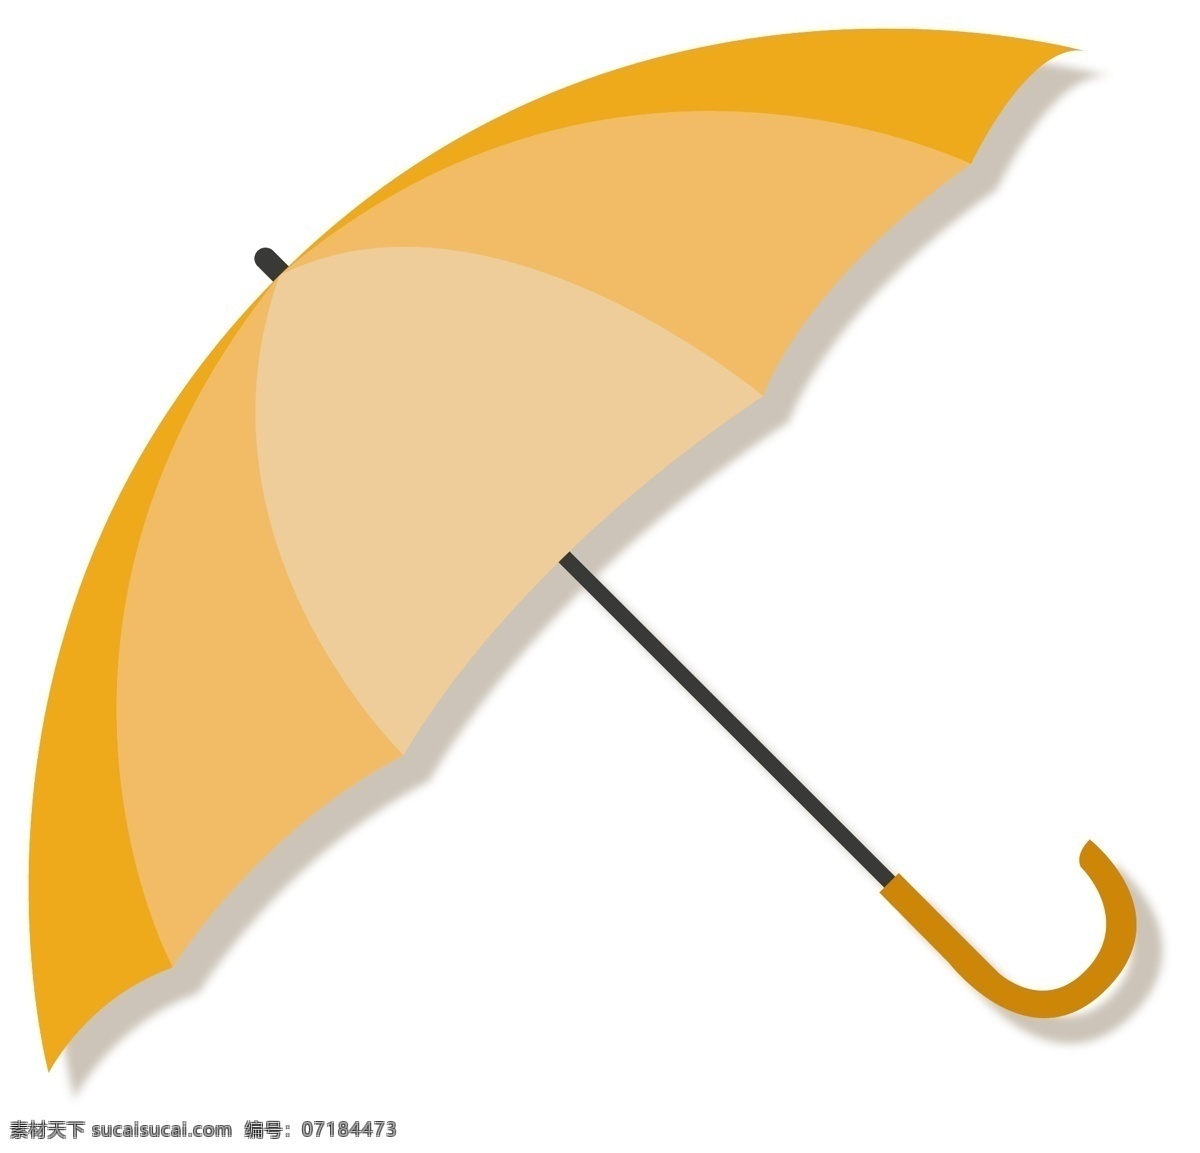 遮阳伞 雨伞 矢量 矢量素材 矢量图 手绘素材 伞 卡通素材